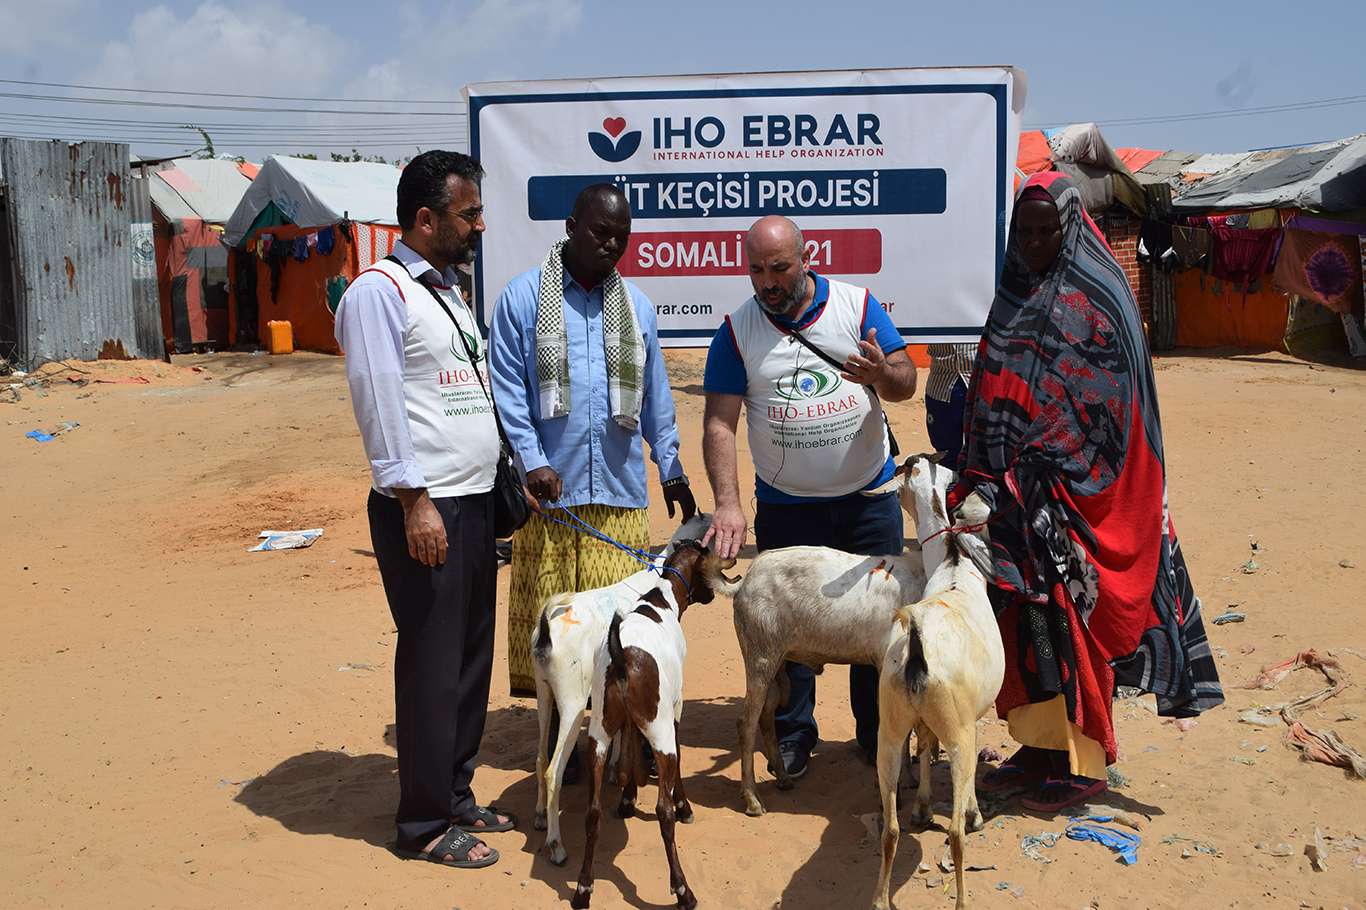 IHO-EBRAR'dan Somali'ye "Süt Keçisi Projesi"